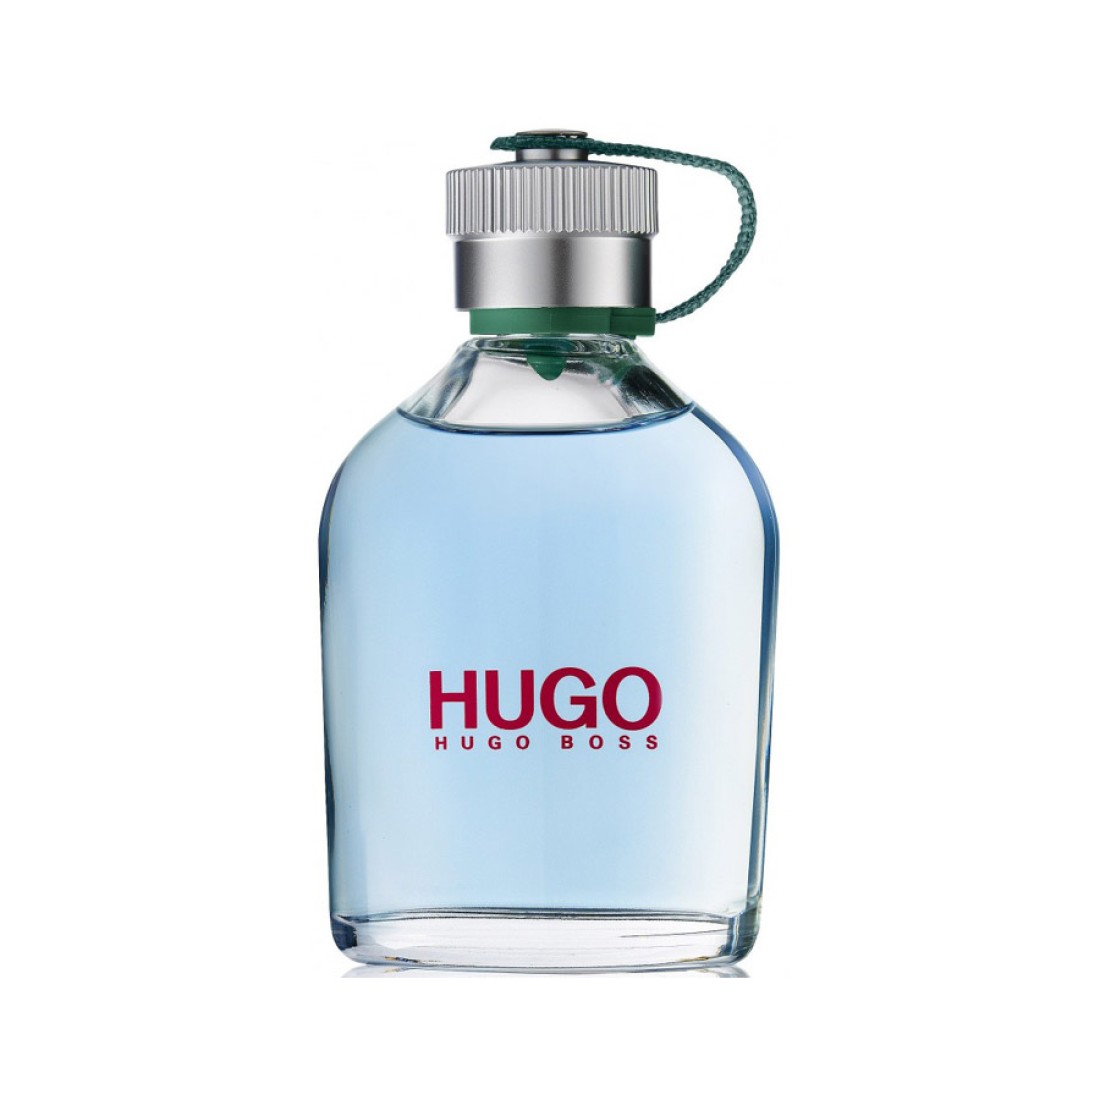 Hugo купить спб. Хьюго босс. Хьюго босс Хьюго мен. Парфюм Hugo man Hugo Boss. Hugo Boss Classic.